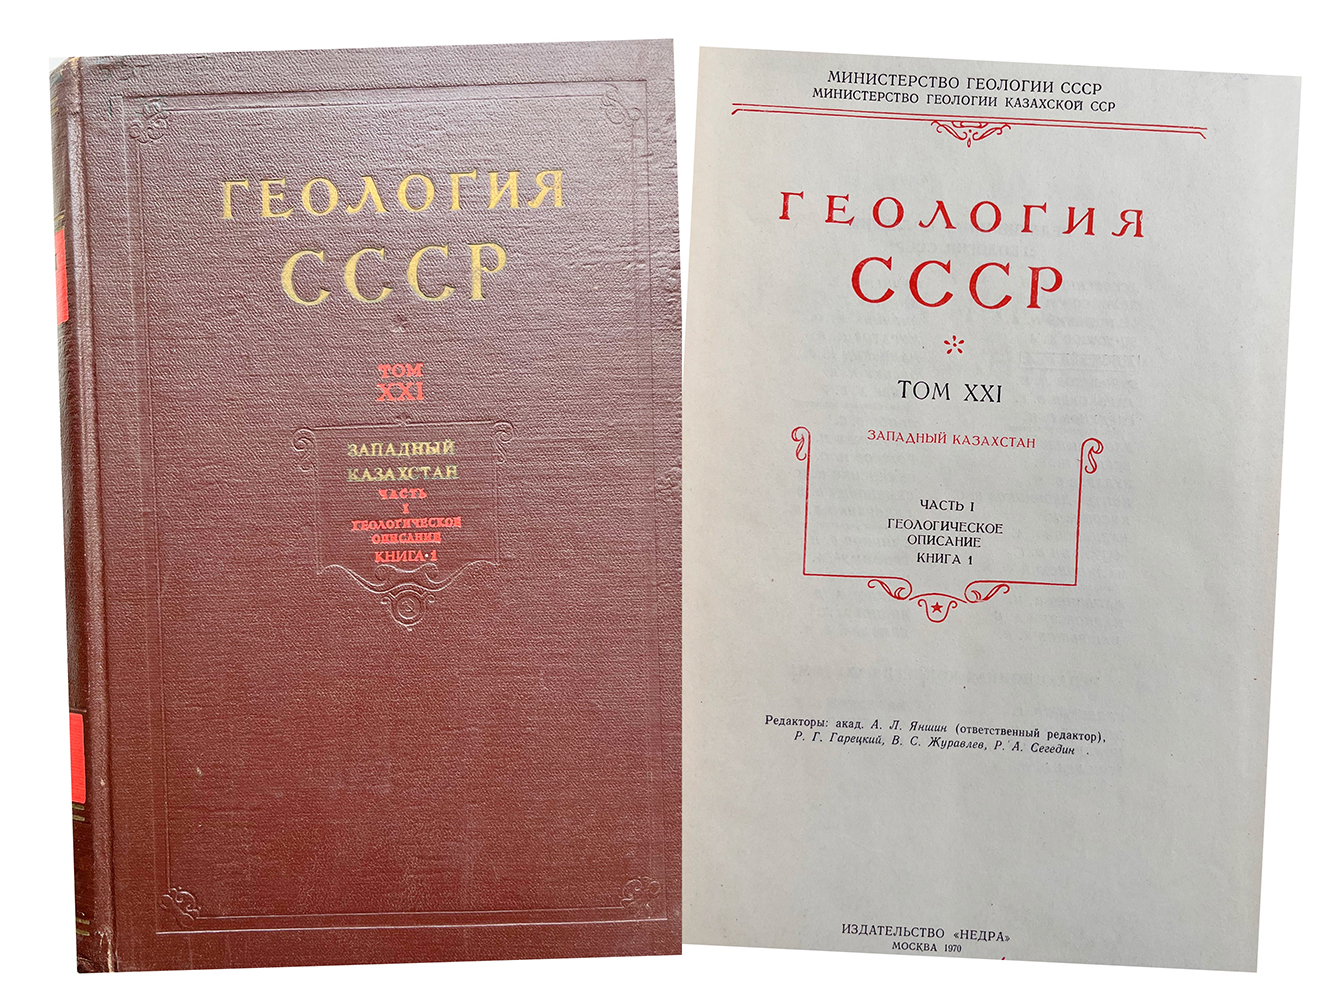 Купить книгу "Геология СССР"